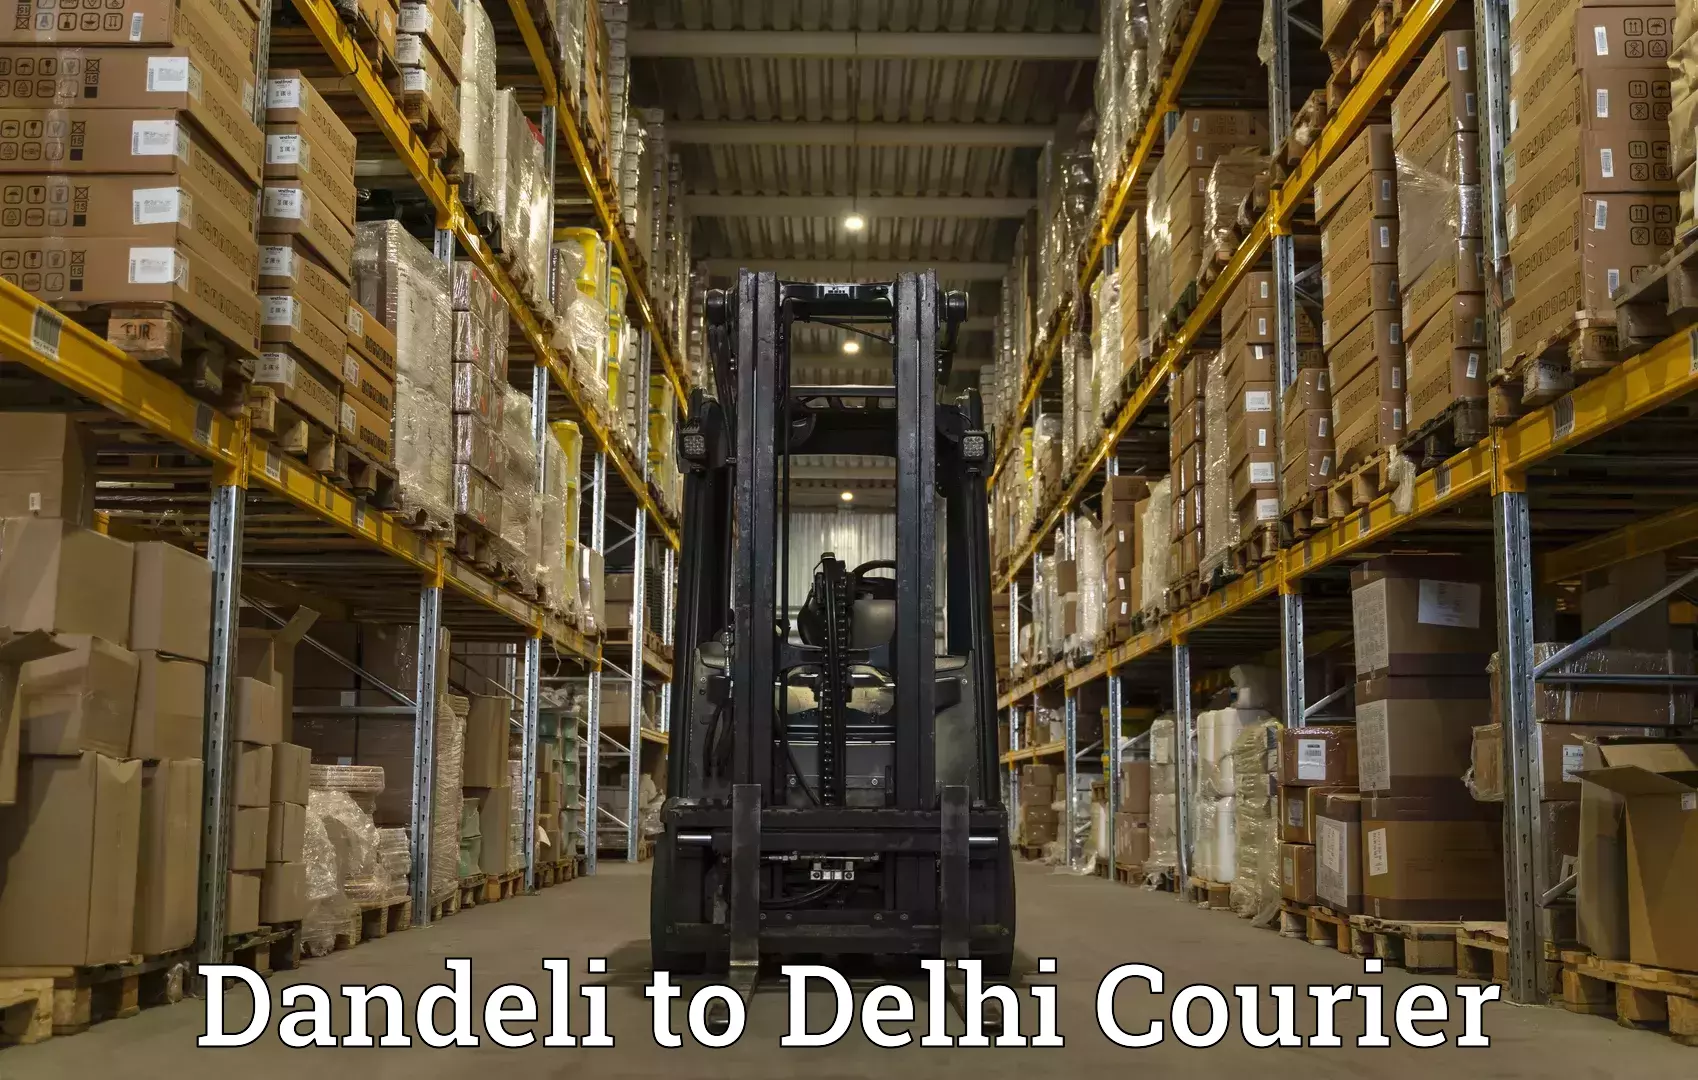 International courier networks Dandeli to University of Delhi